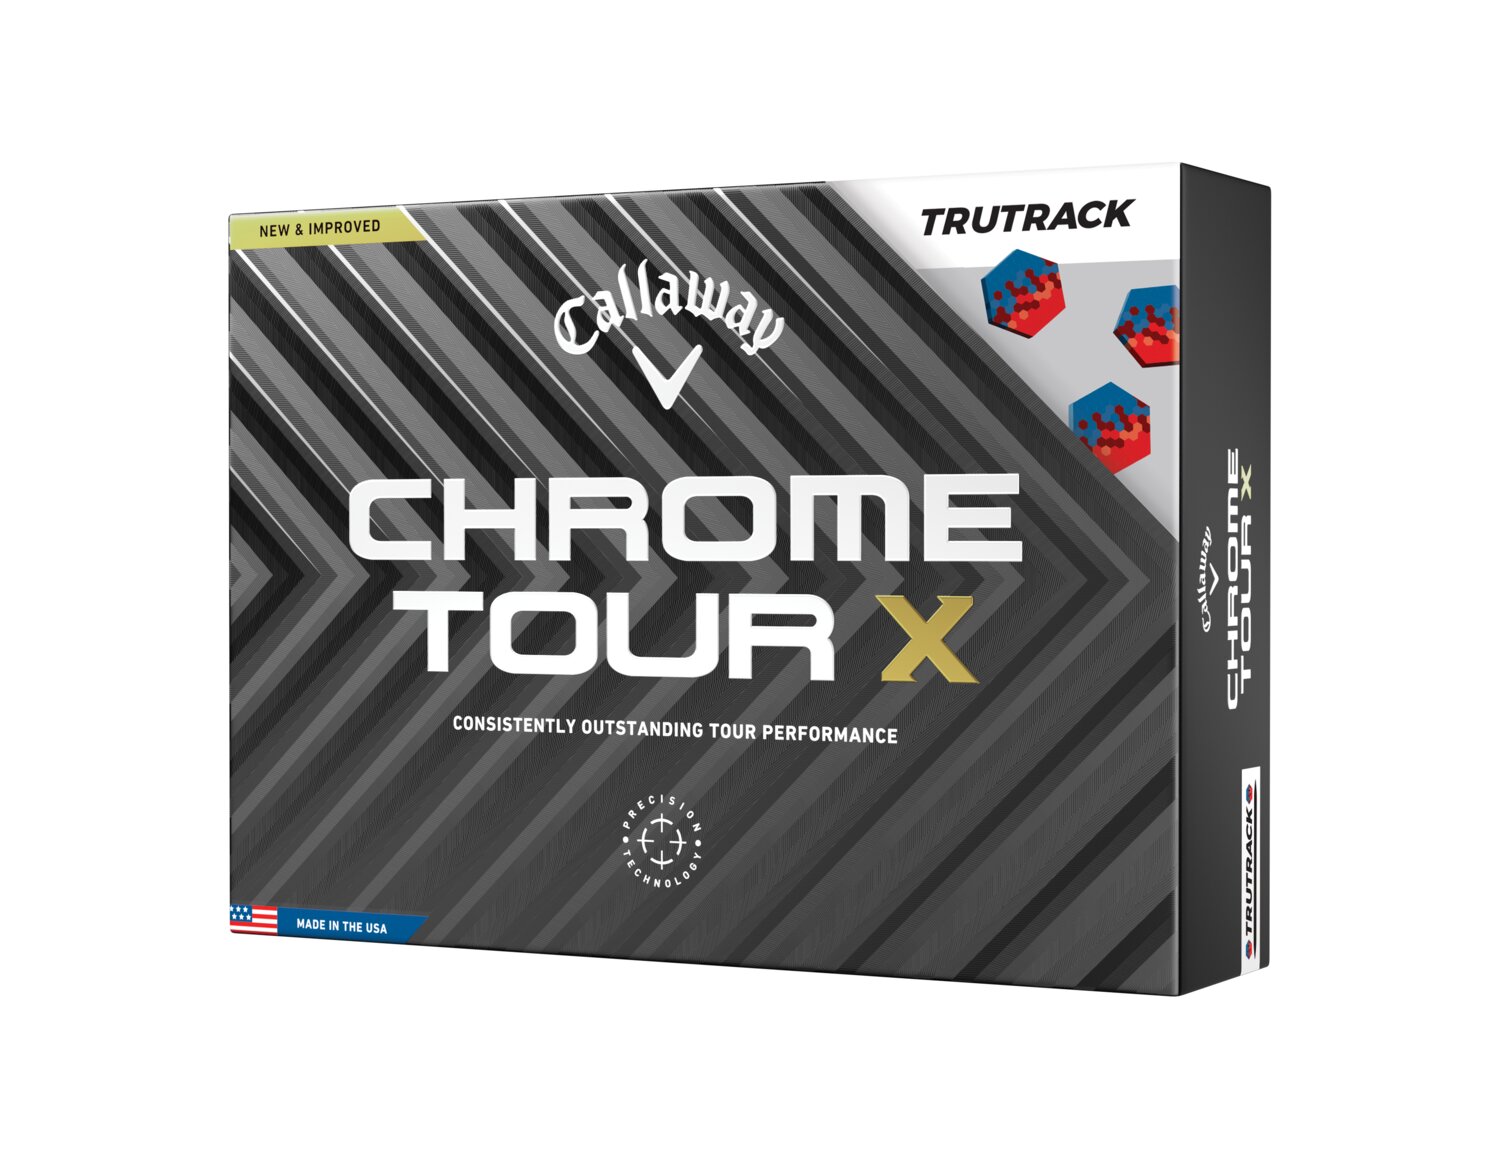 Callaway Chrome Tour X Tru Track